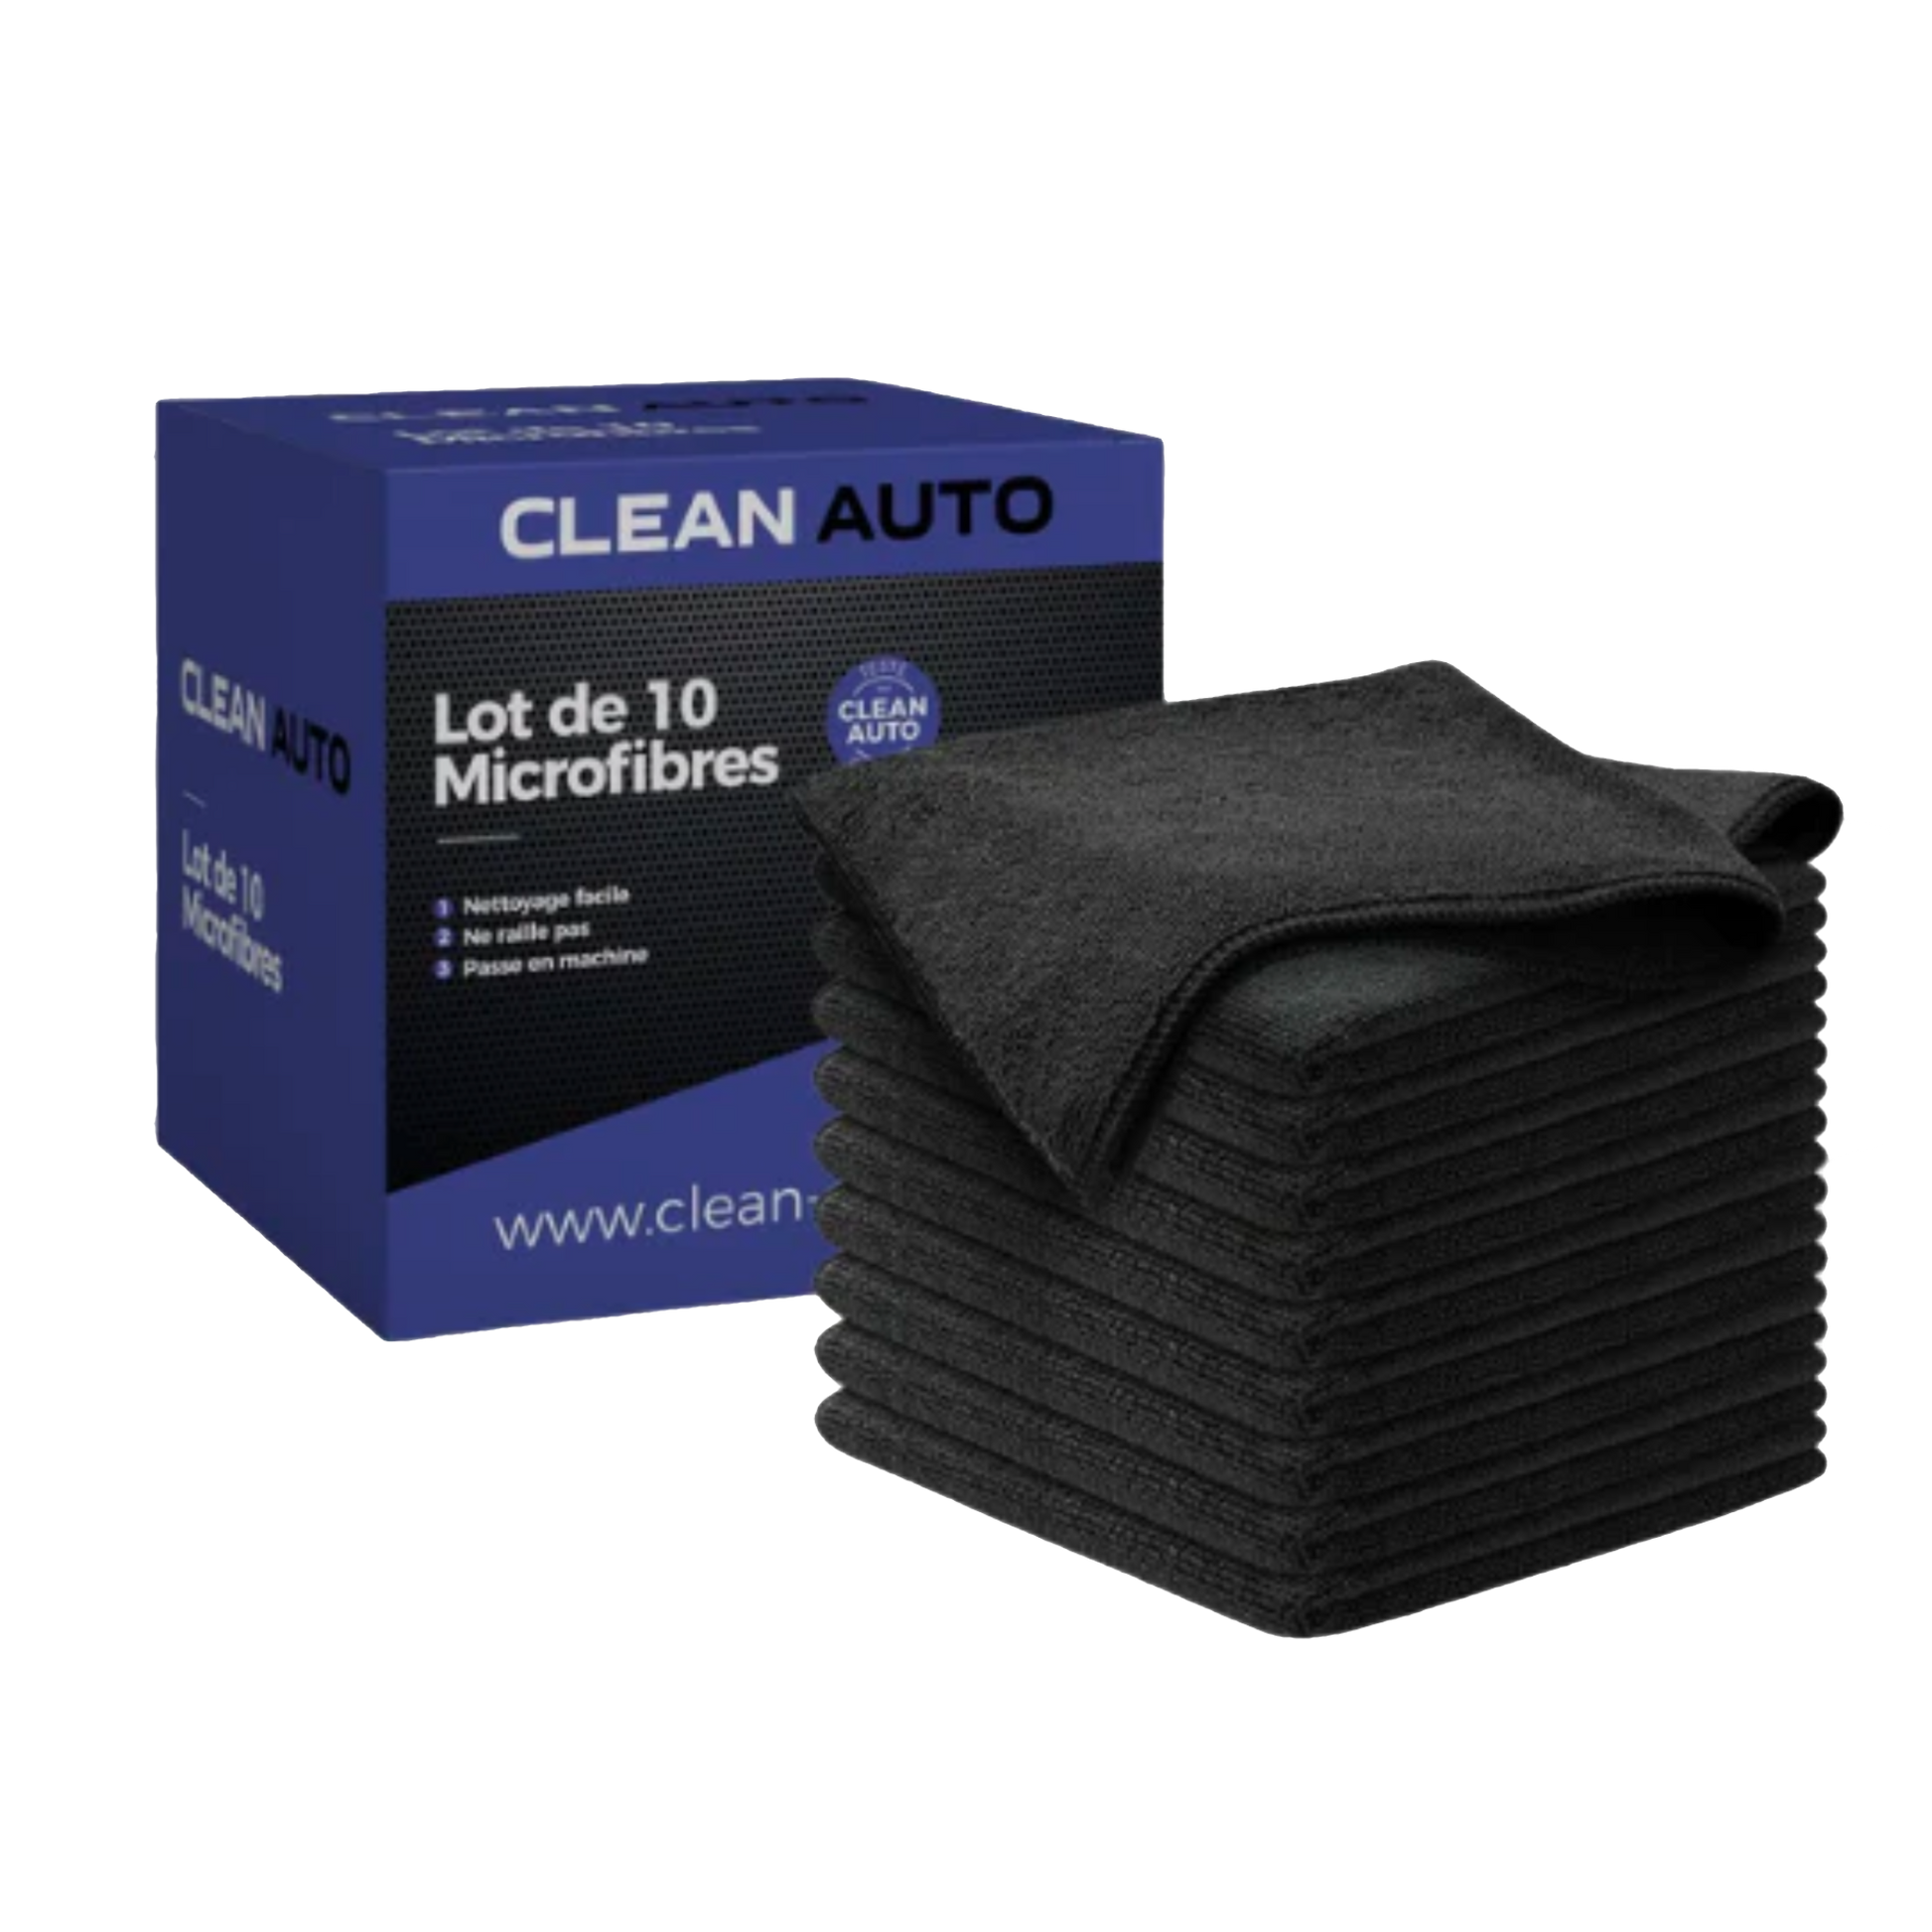 Lot de 10 Microfibres 38cm x 38cm - Clean Auto – Clean Group